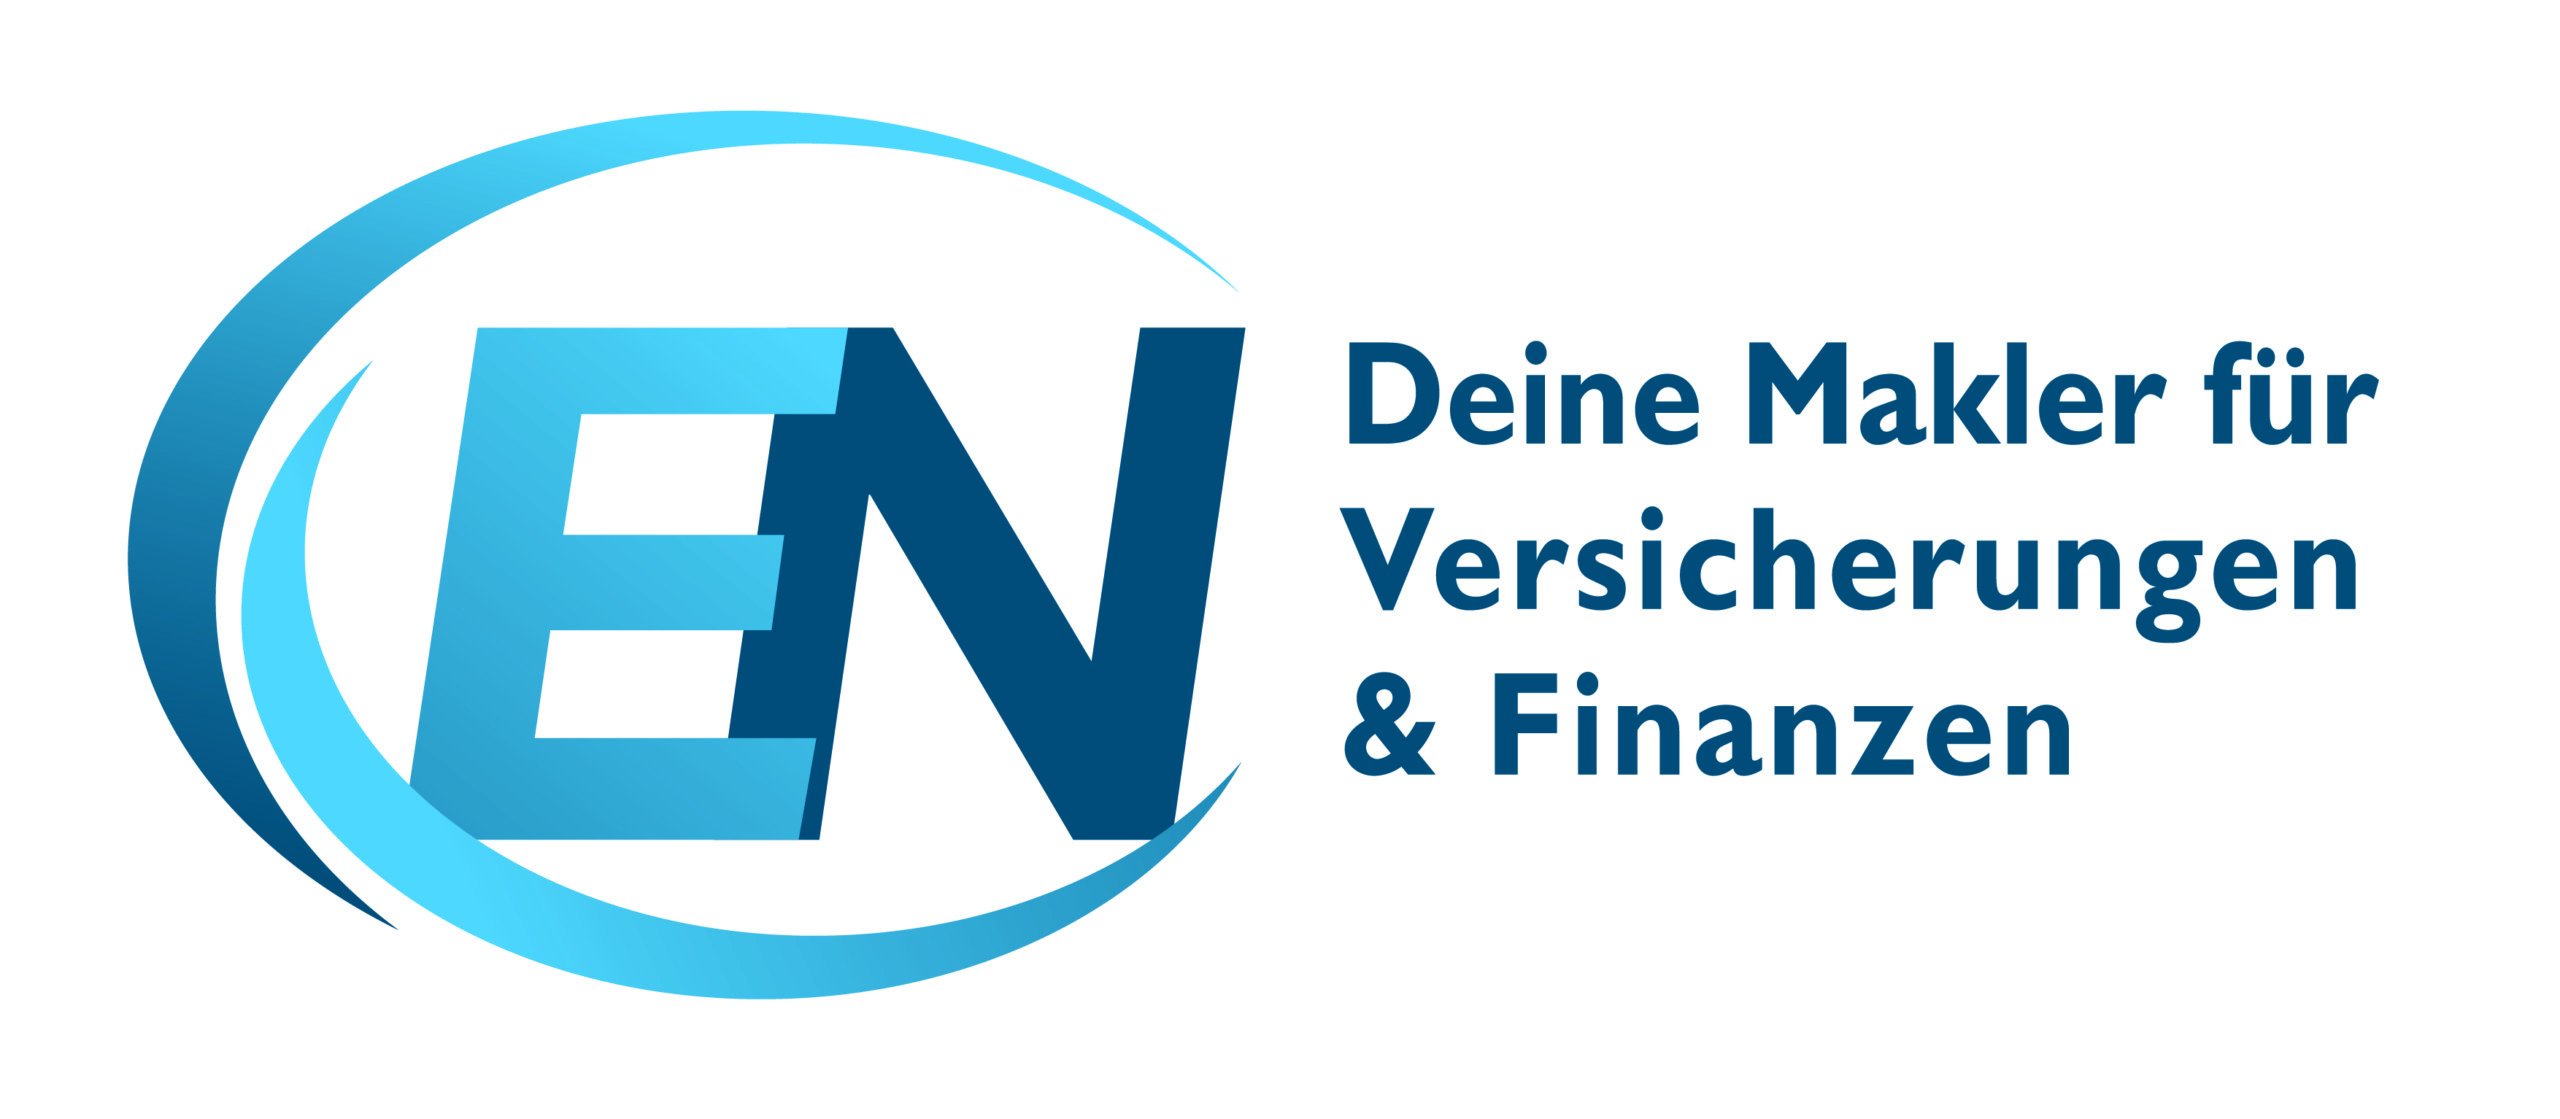 Emmerich & Nolden GmbH & Co. KG – Deine Makler für Finanzen und Versicherungen